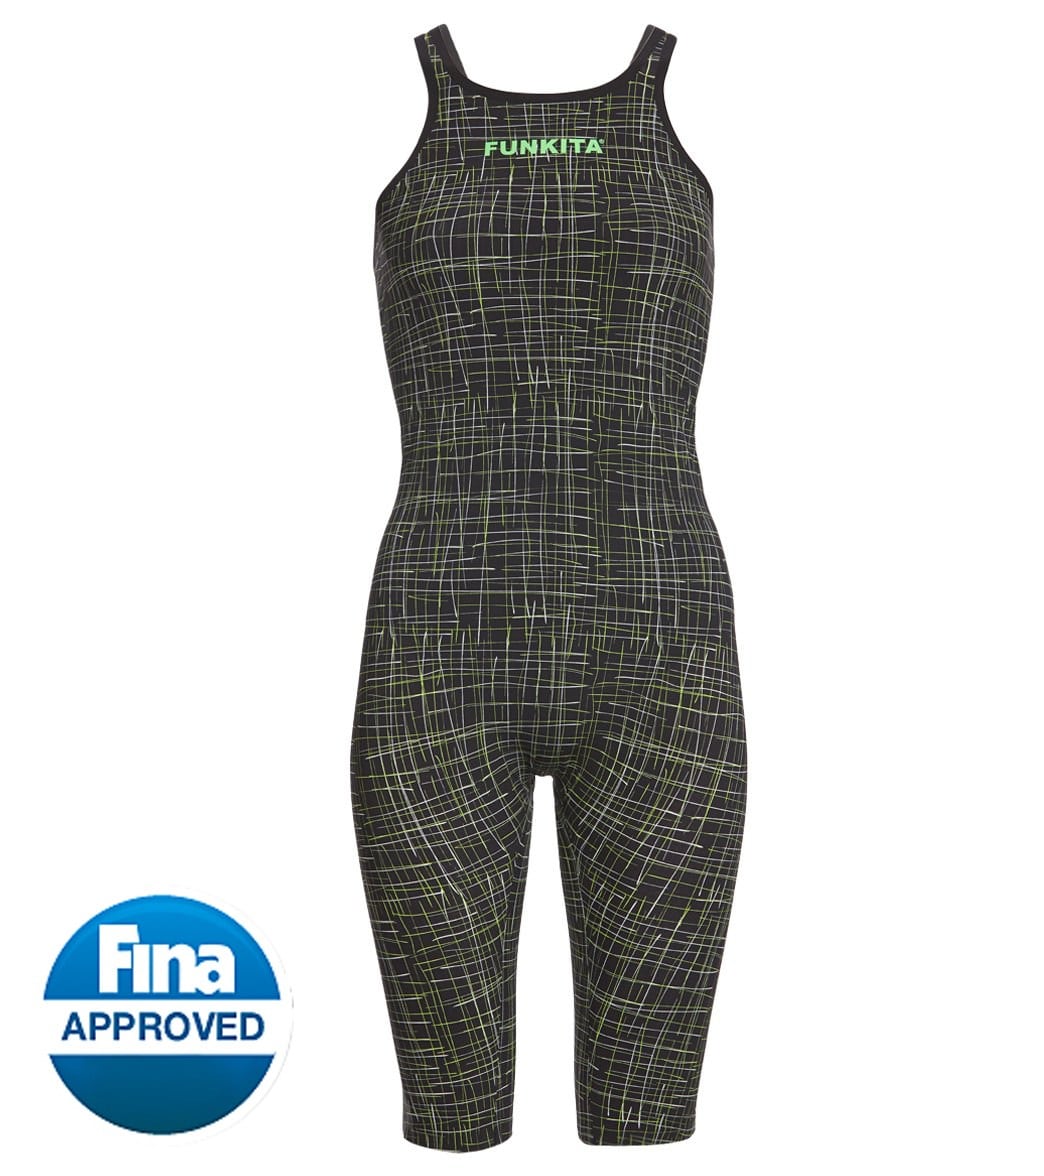 Funkita Women's Apex Stealth Open Back Kneeskin Tech Suit Swimsuit - Green 20 - Swimoutlet.com